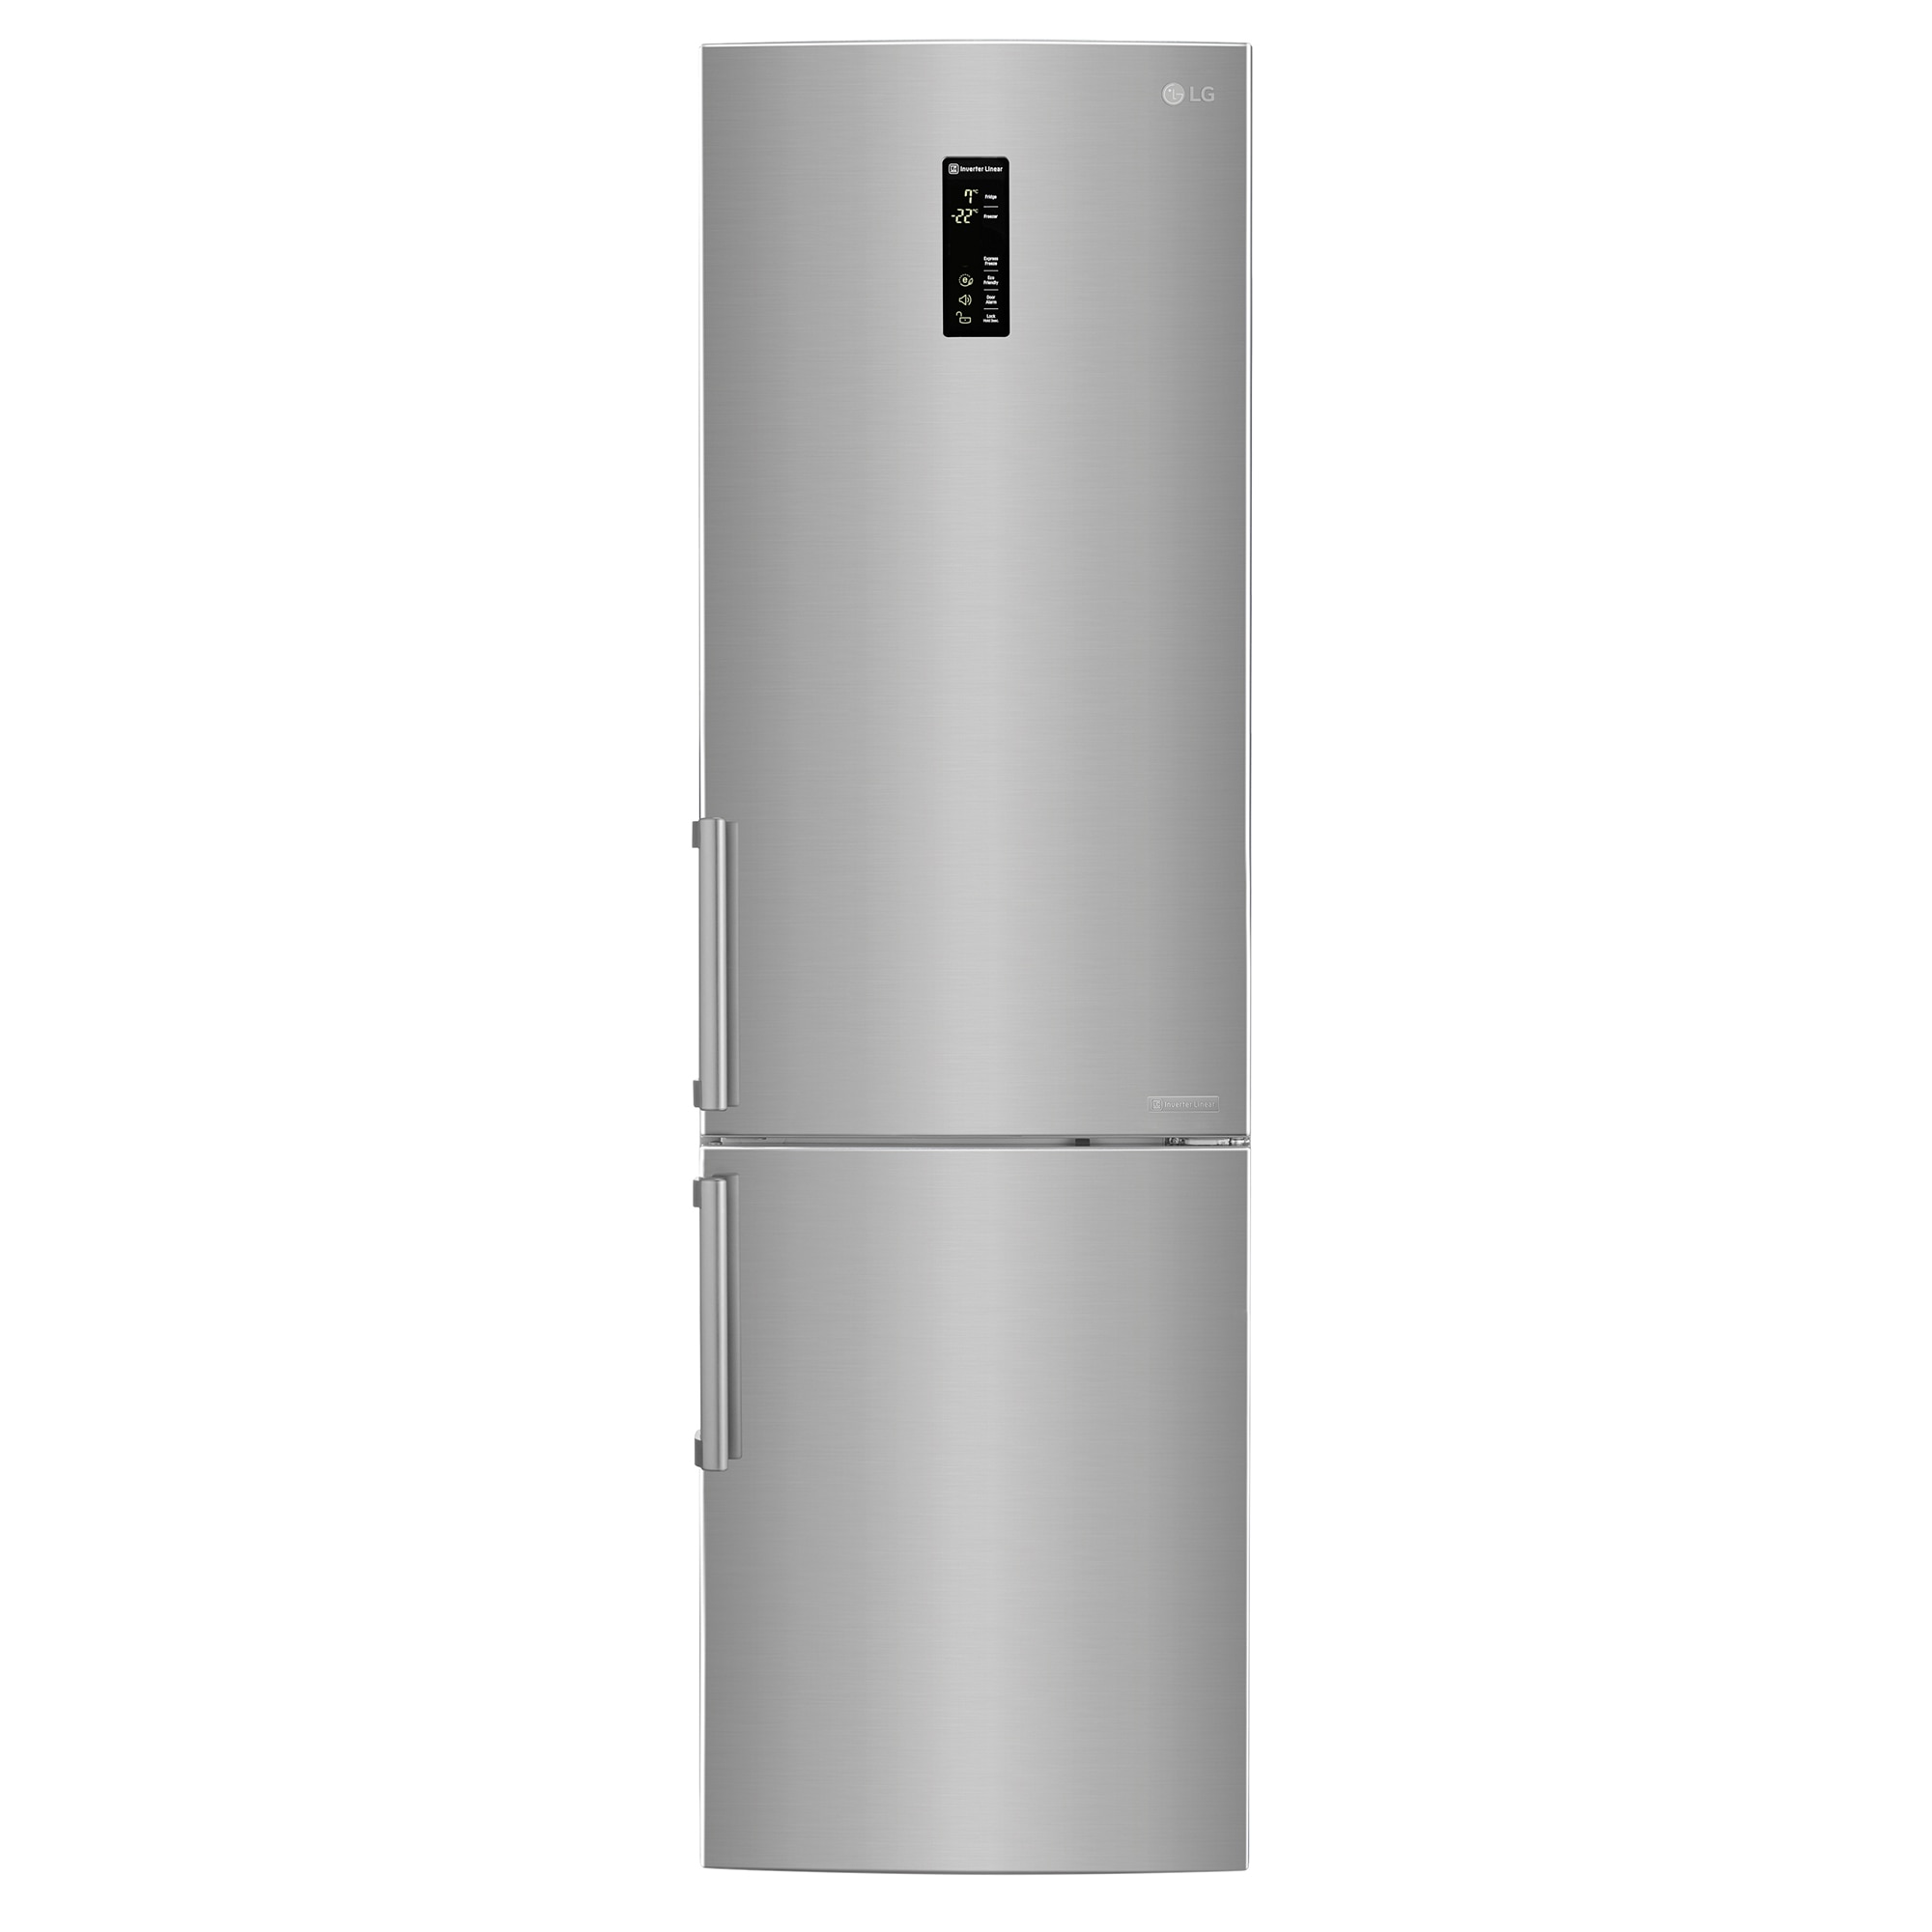 Хладилник LG GBB60PZFZB с обем от 343 л.